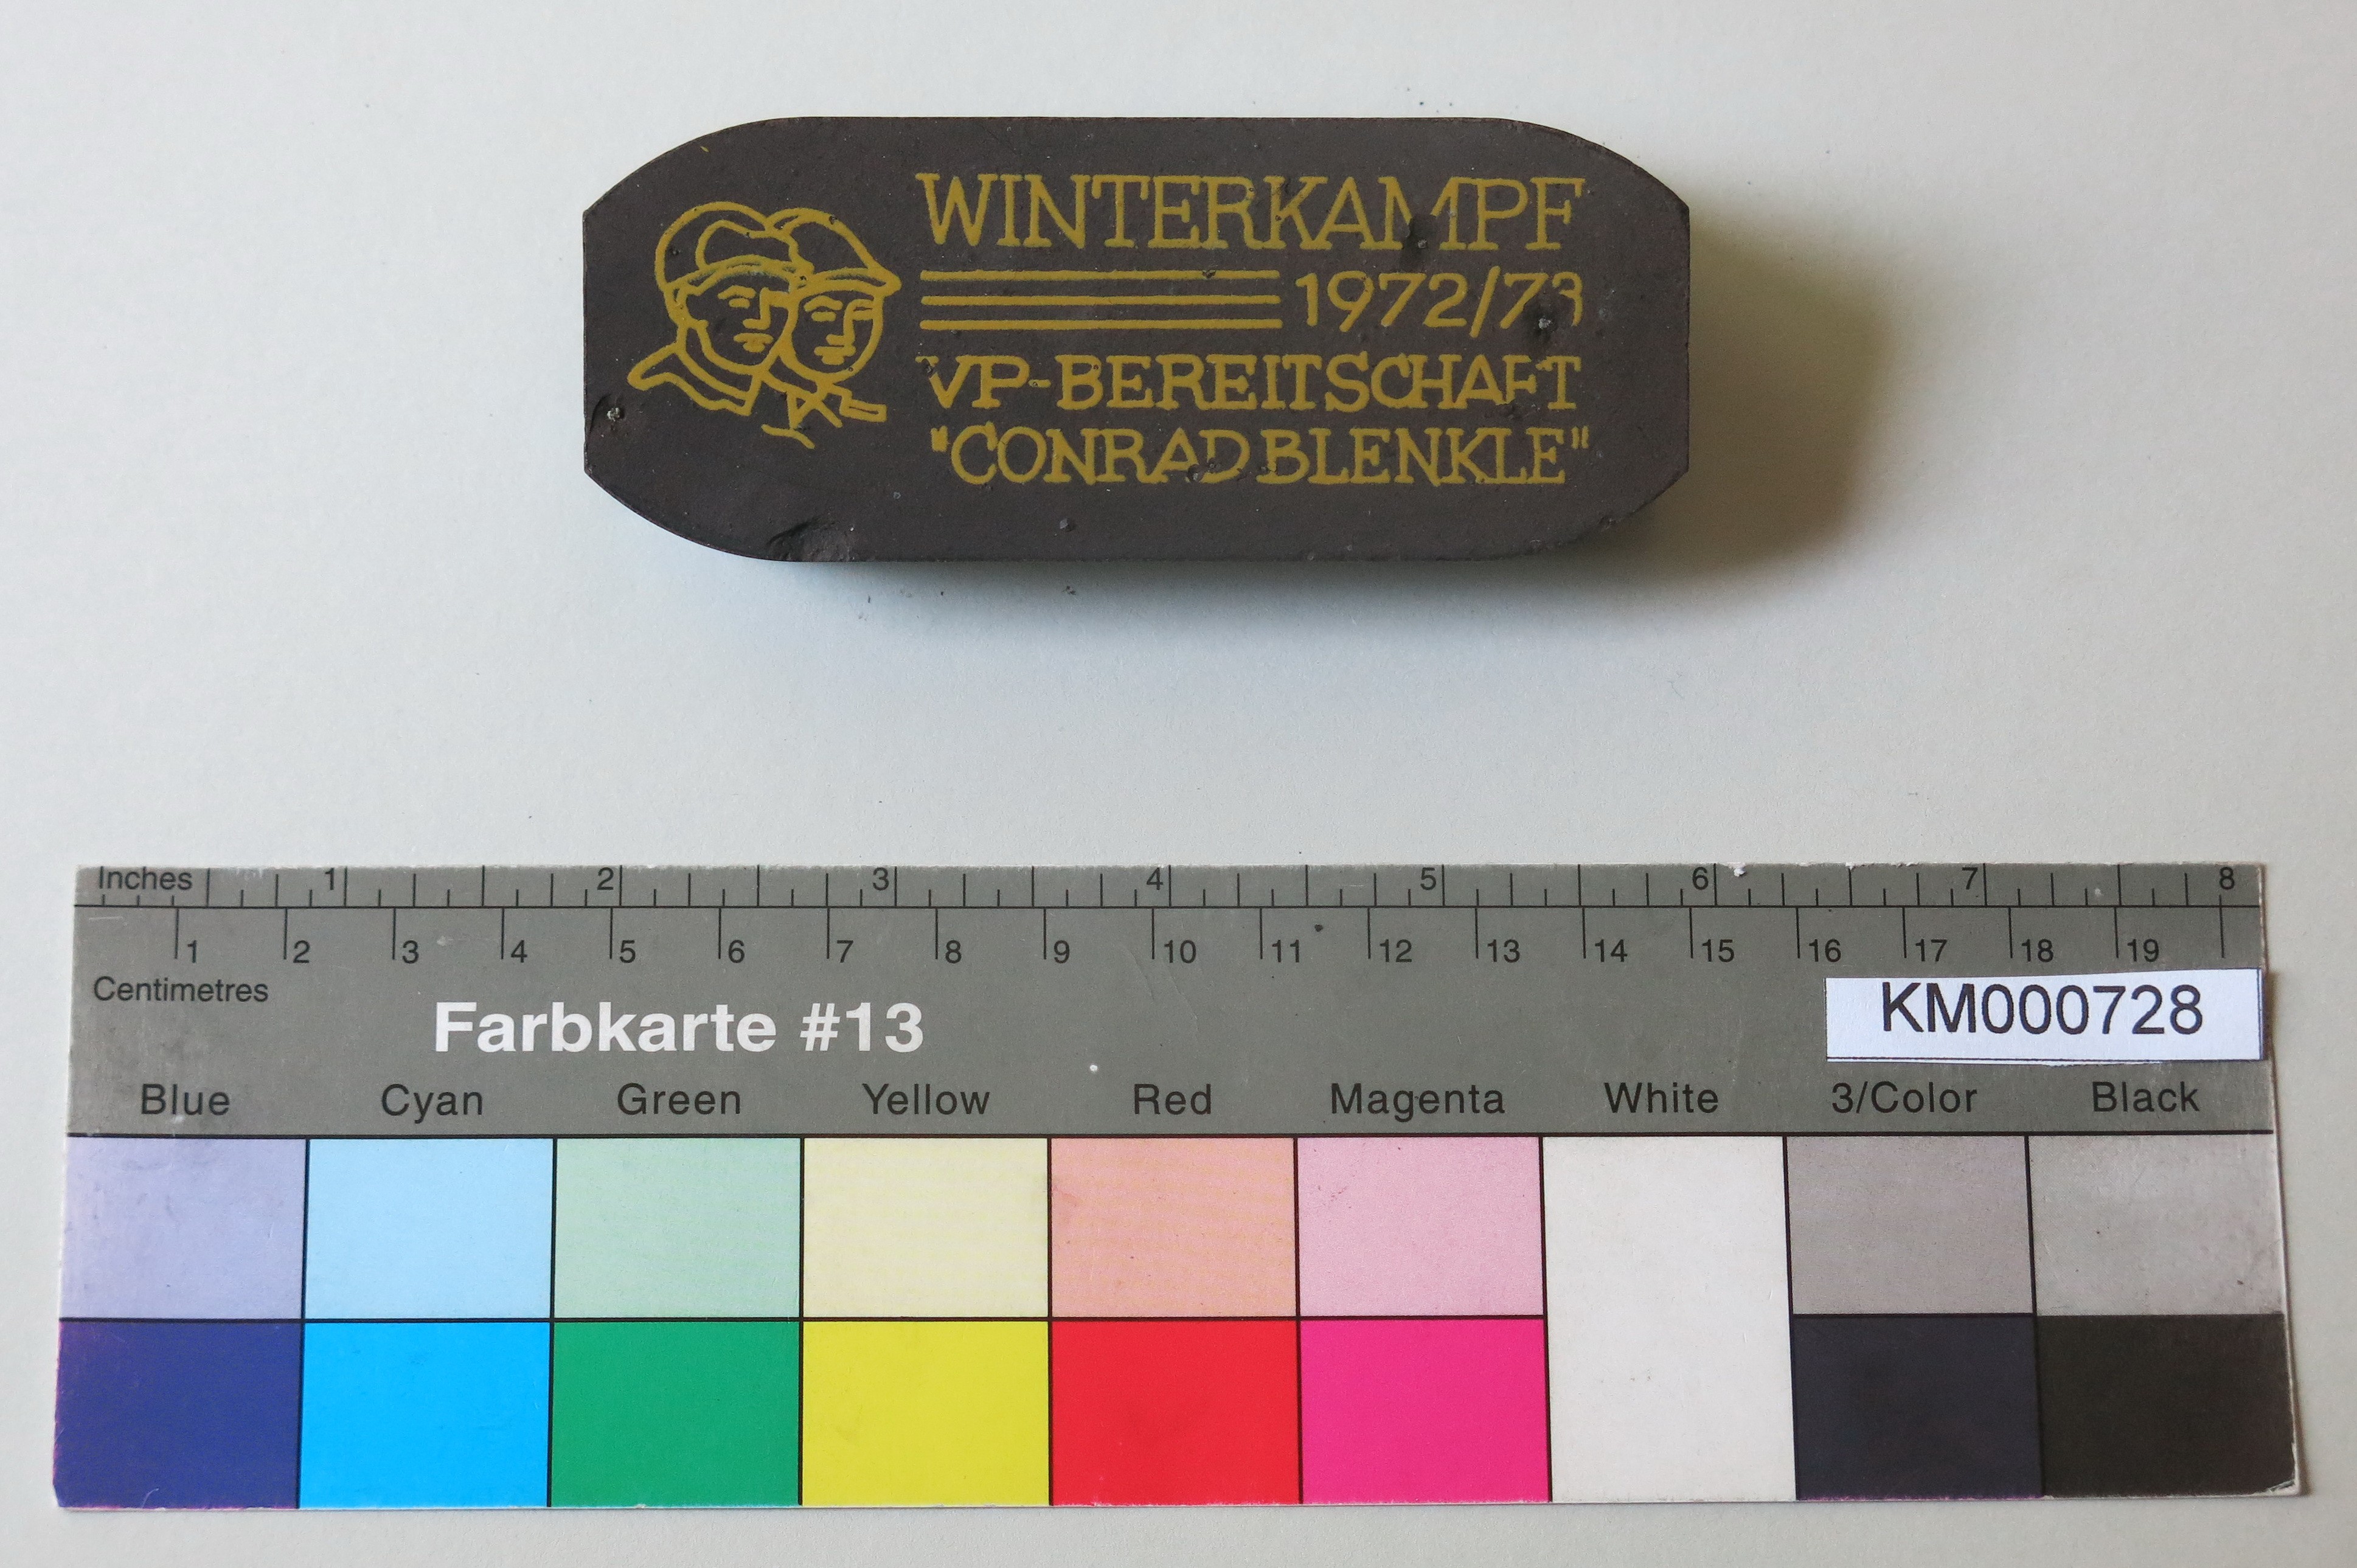 Zierbrikett "WINTERKAMPF 1972/73 VP-BEREITSCHAFT 'CONRAD BLENKLE' " (Energiefabrik Knappenrode CC BY-SA)